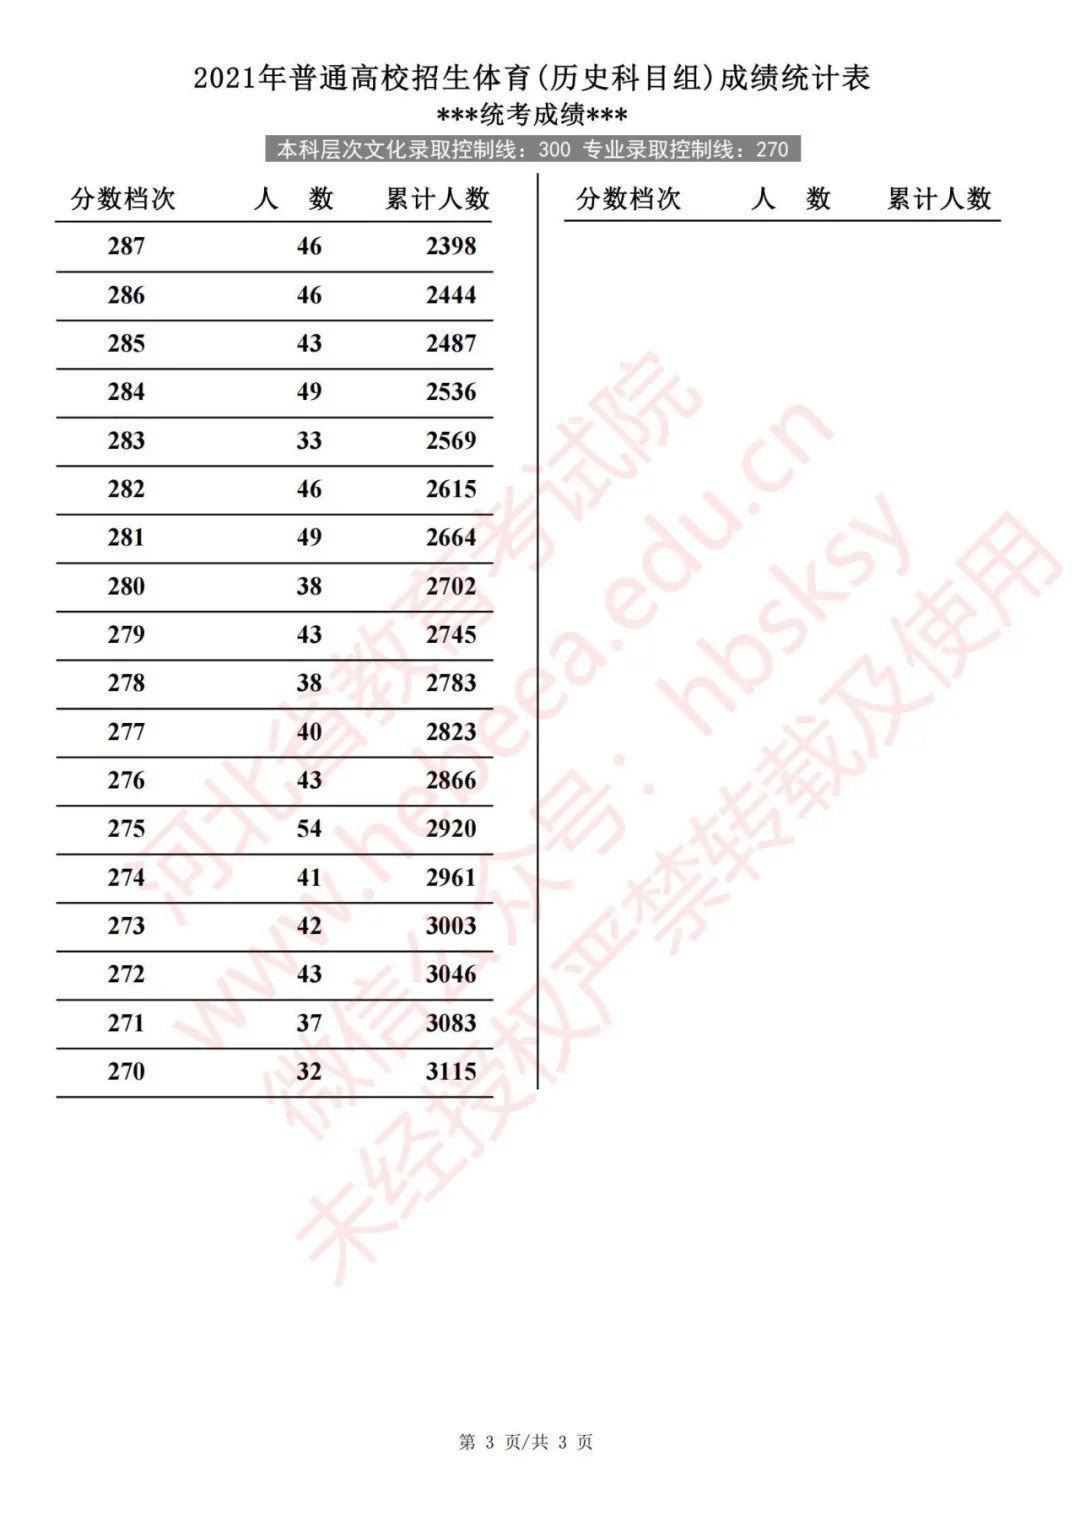 体育类|2021年河北省普通高校招生体育成绩统计表